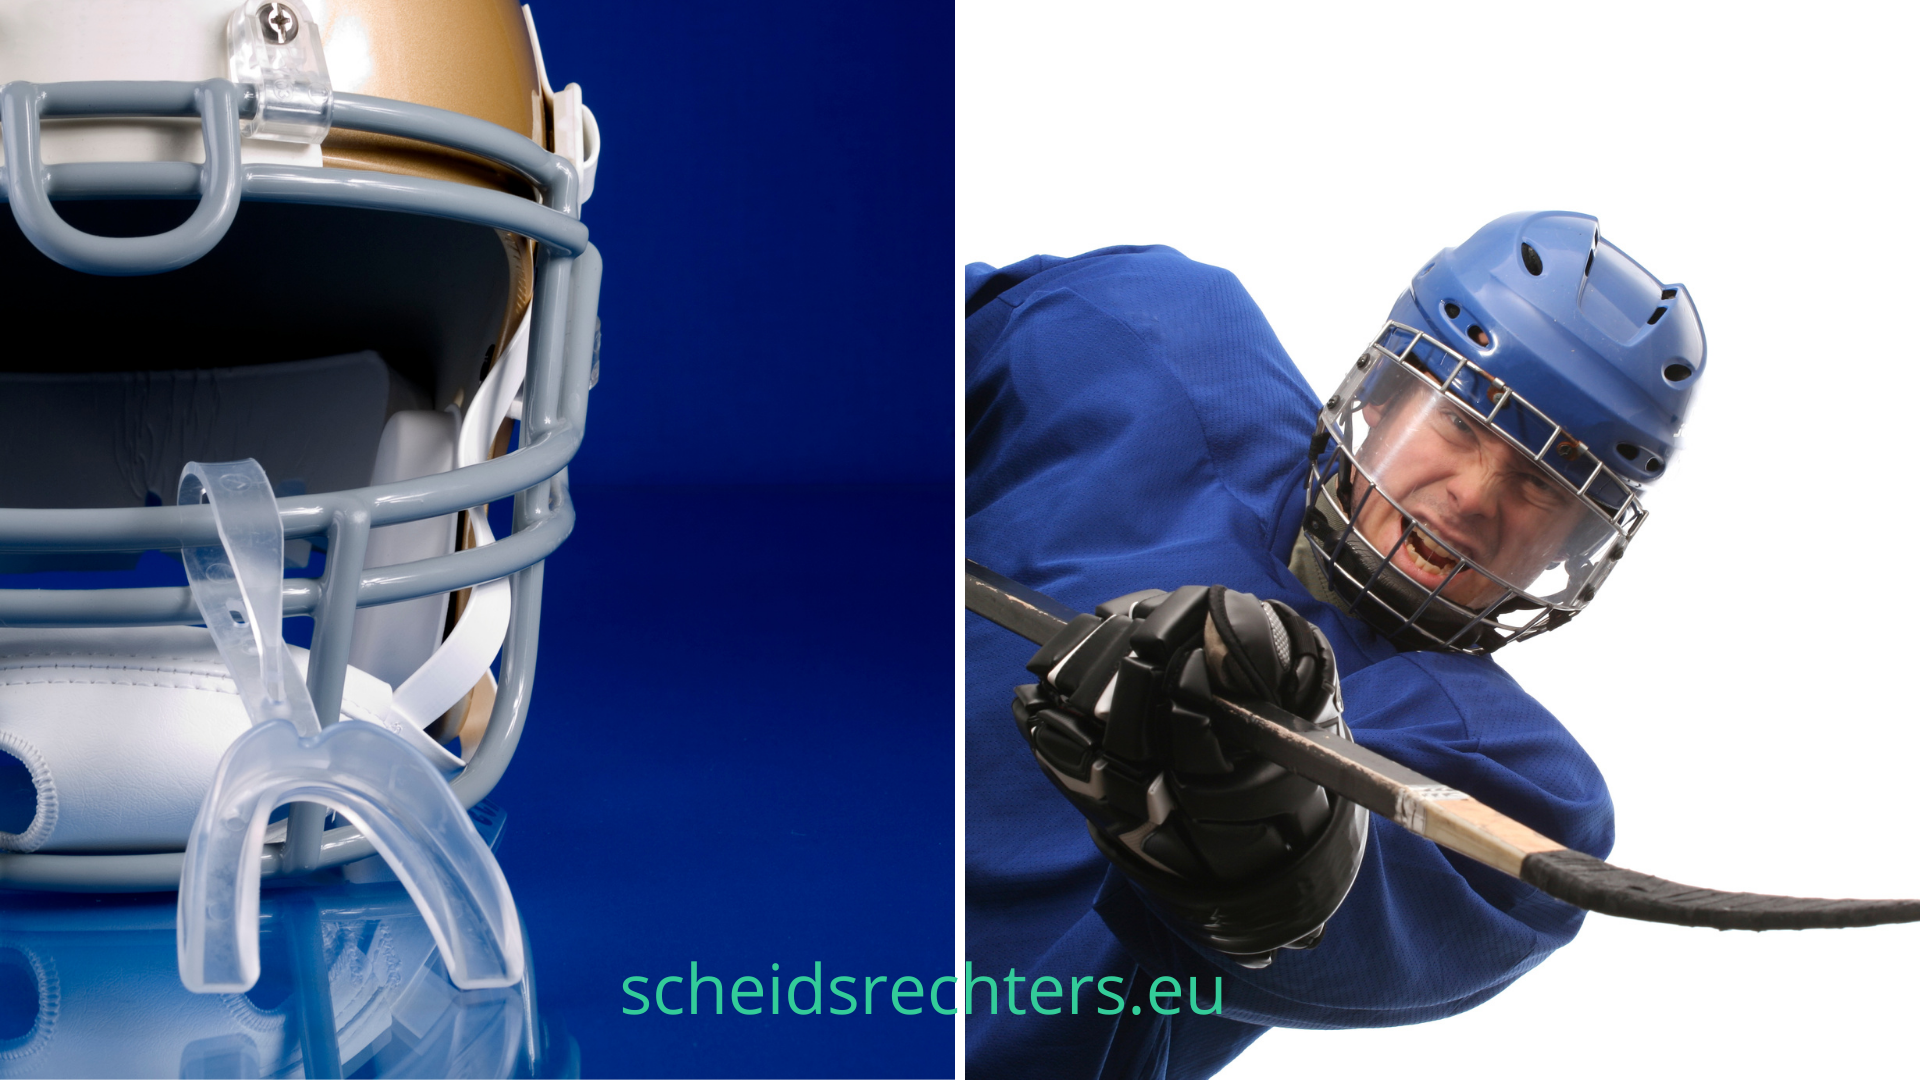 Beste hockey bitje | Maak de juiste keuze voor optimale bescherming